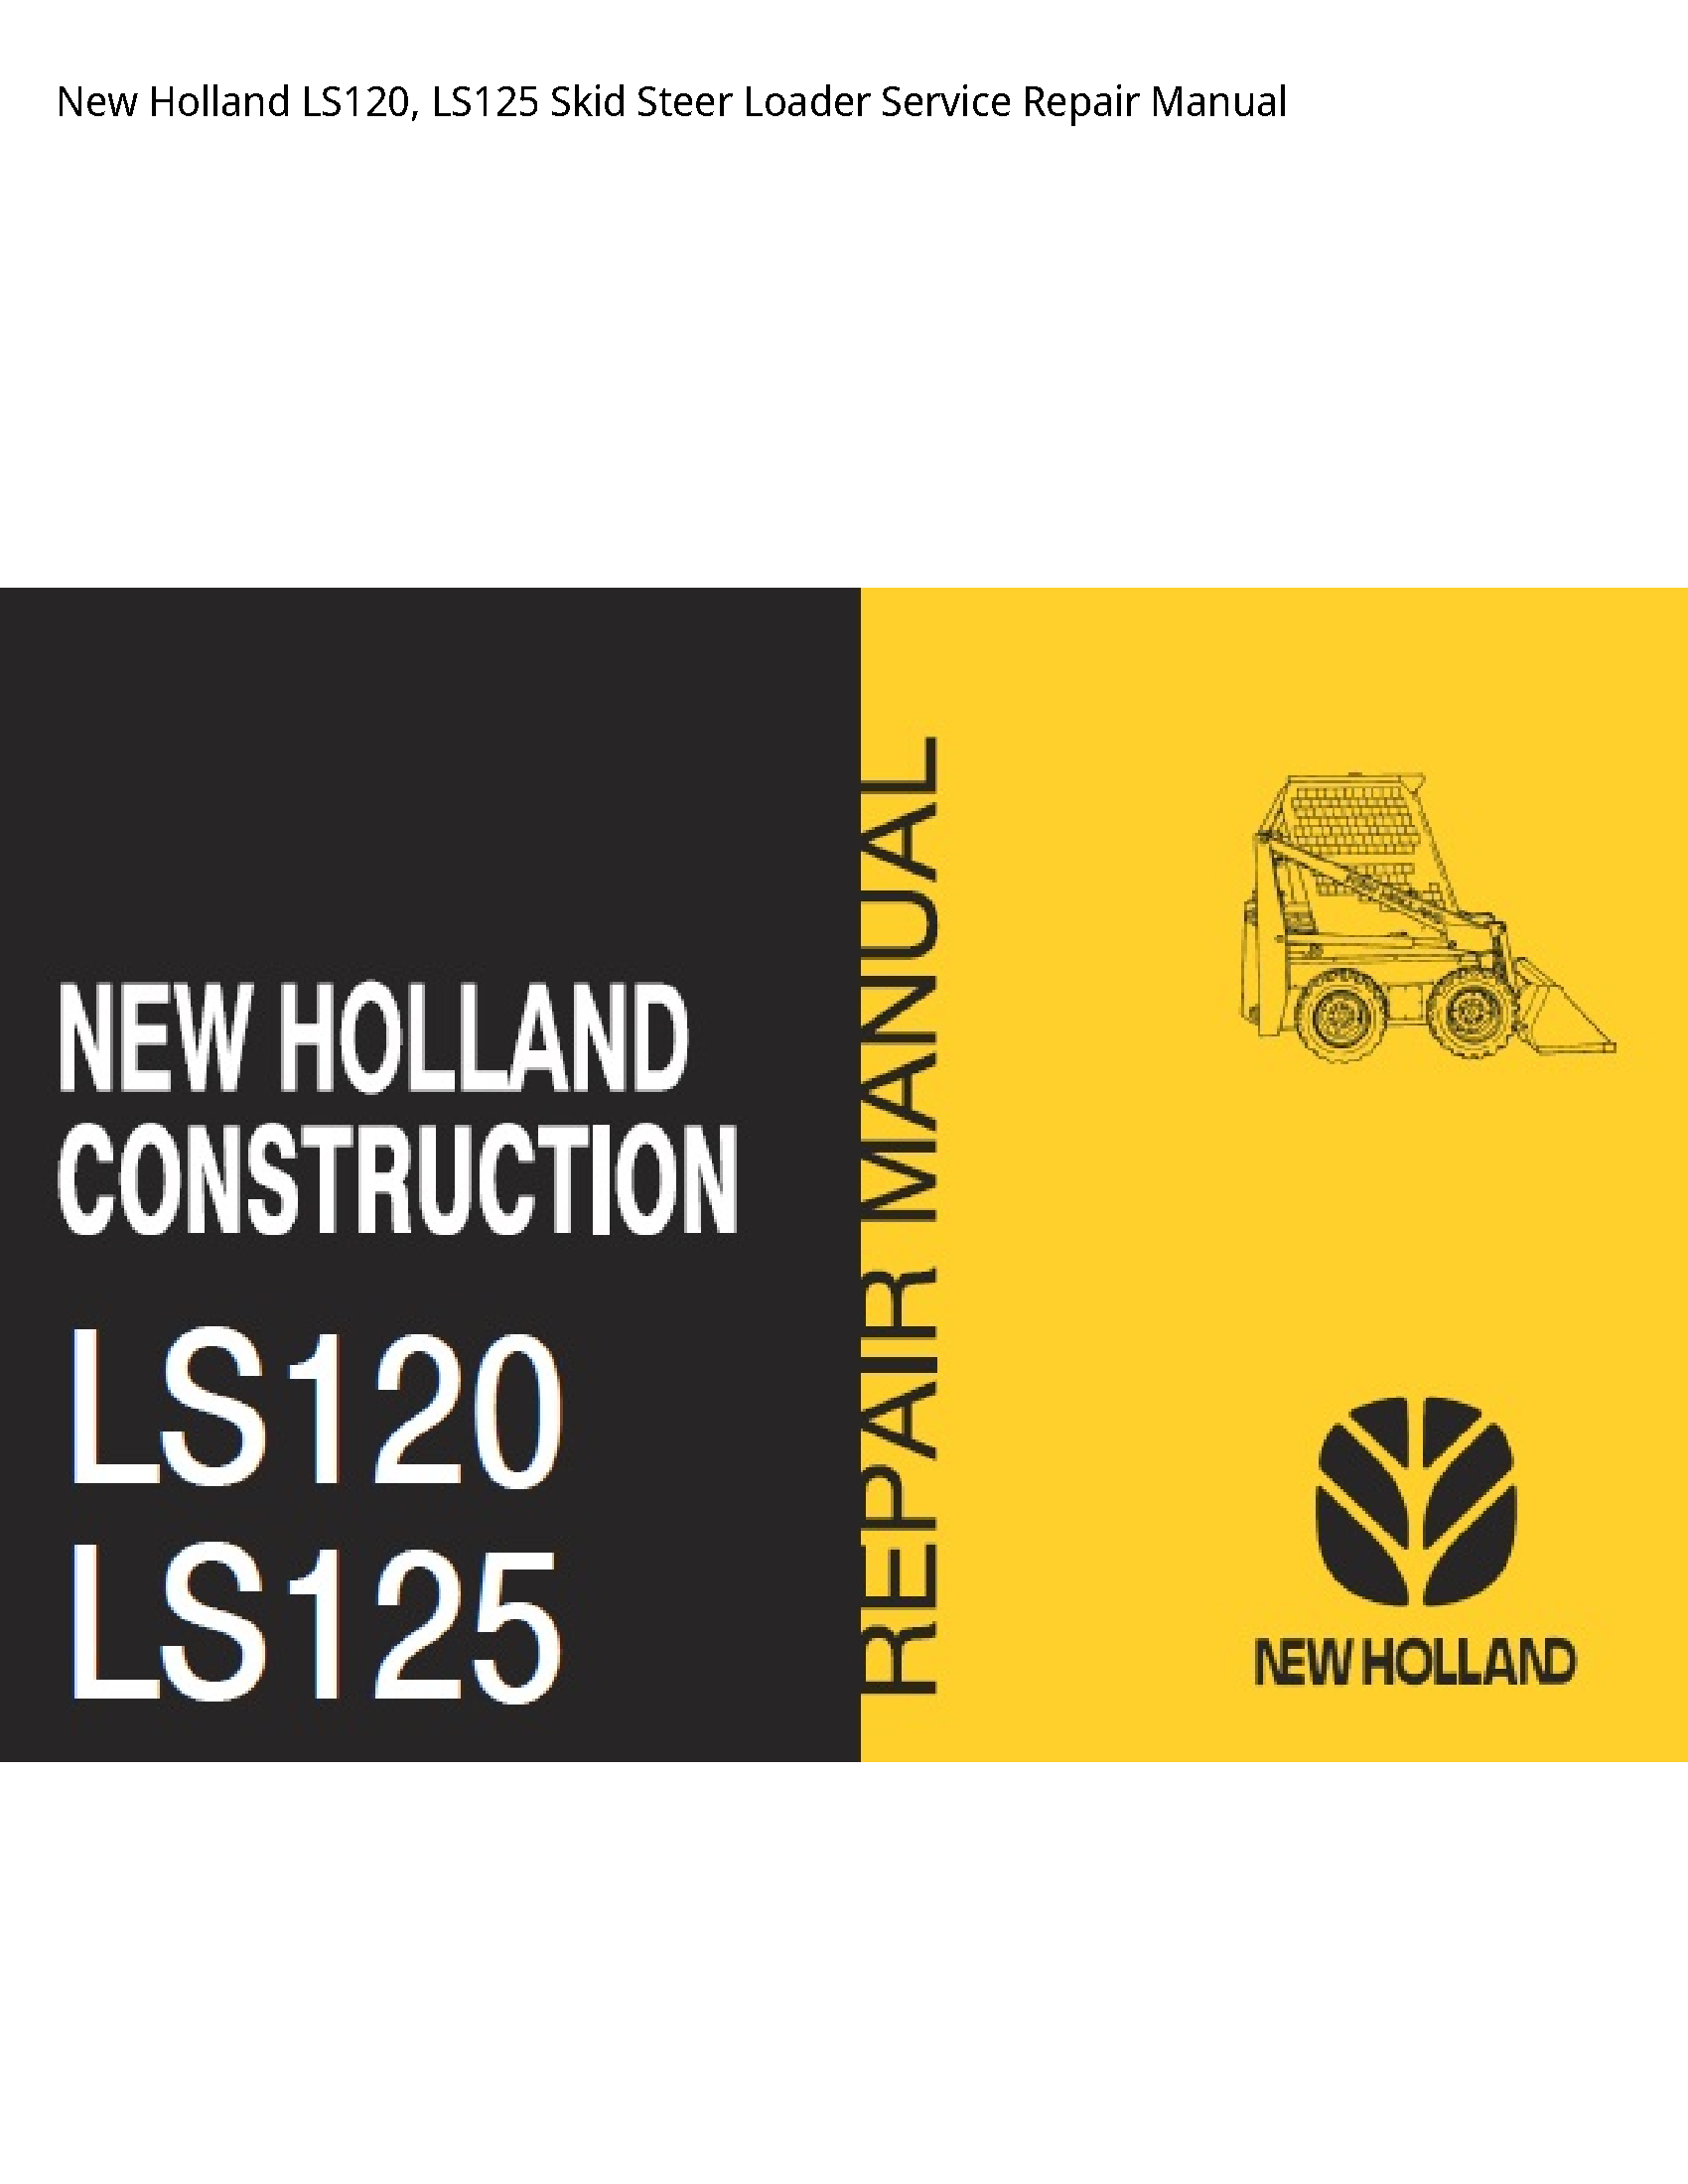 New Holland LS120 Skid Steer Loader manual